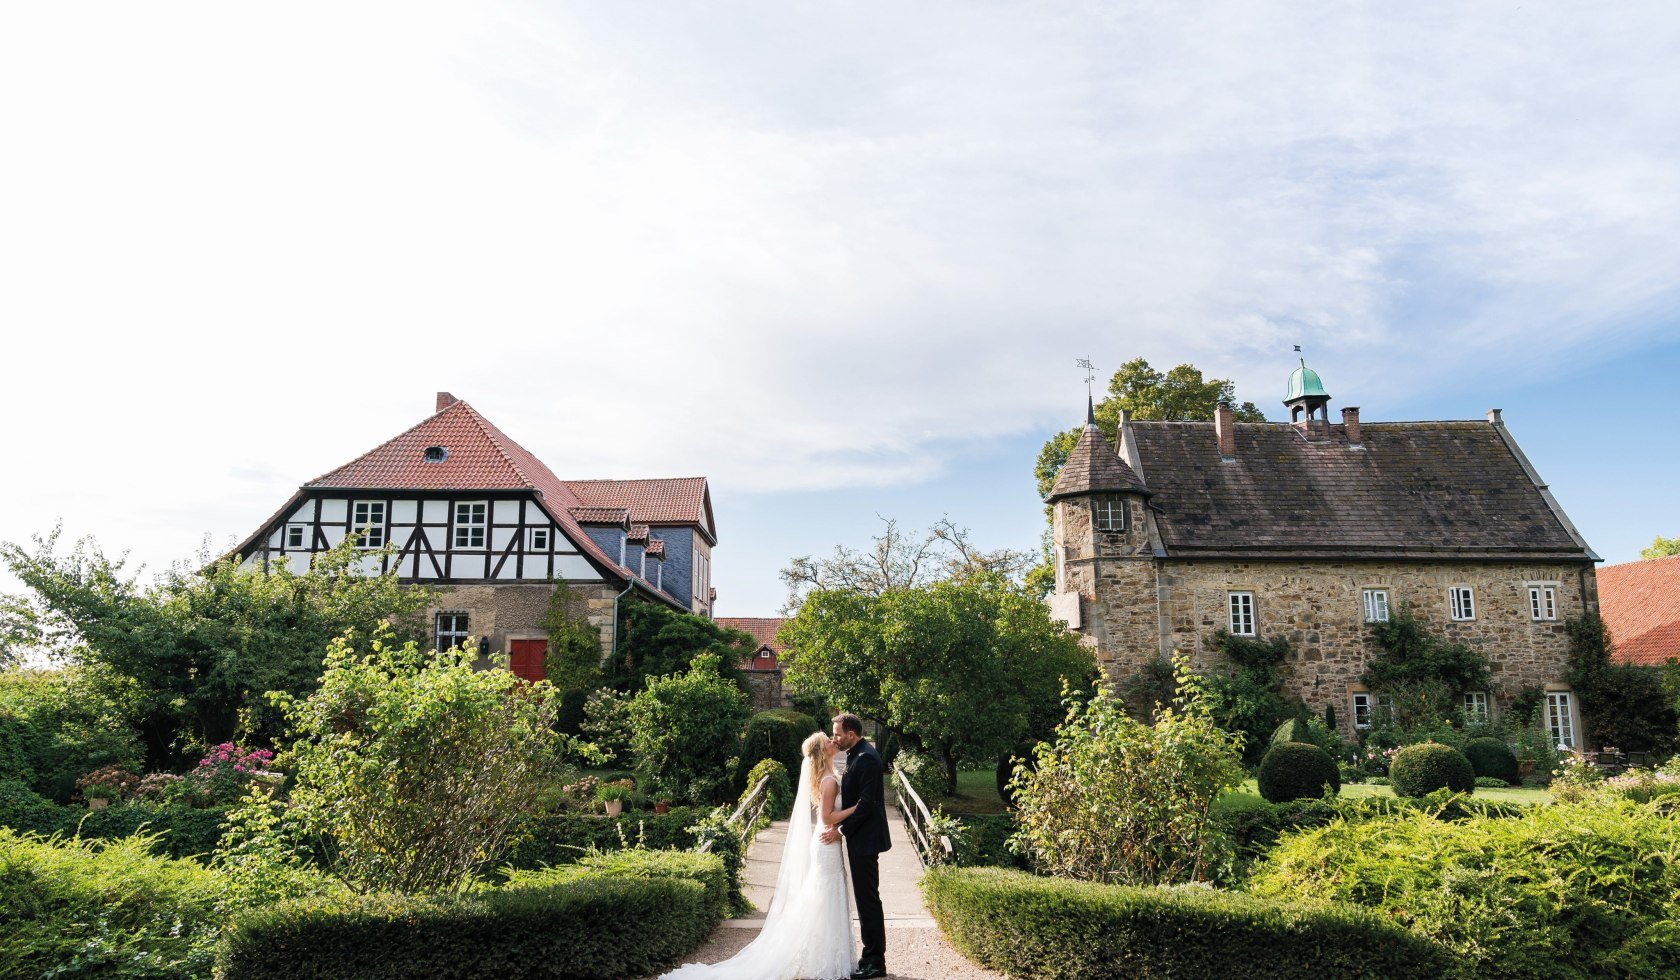 Hochzeitspaar, Rittergut Remeringhausen im Hintergrund, © Rittergut Remmeringhausen